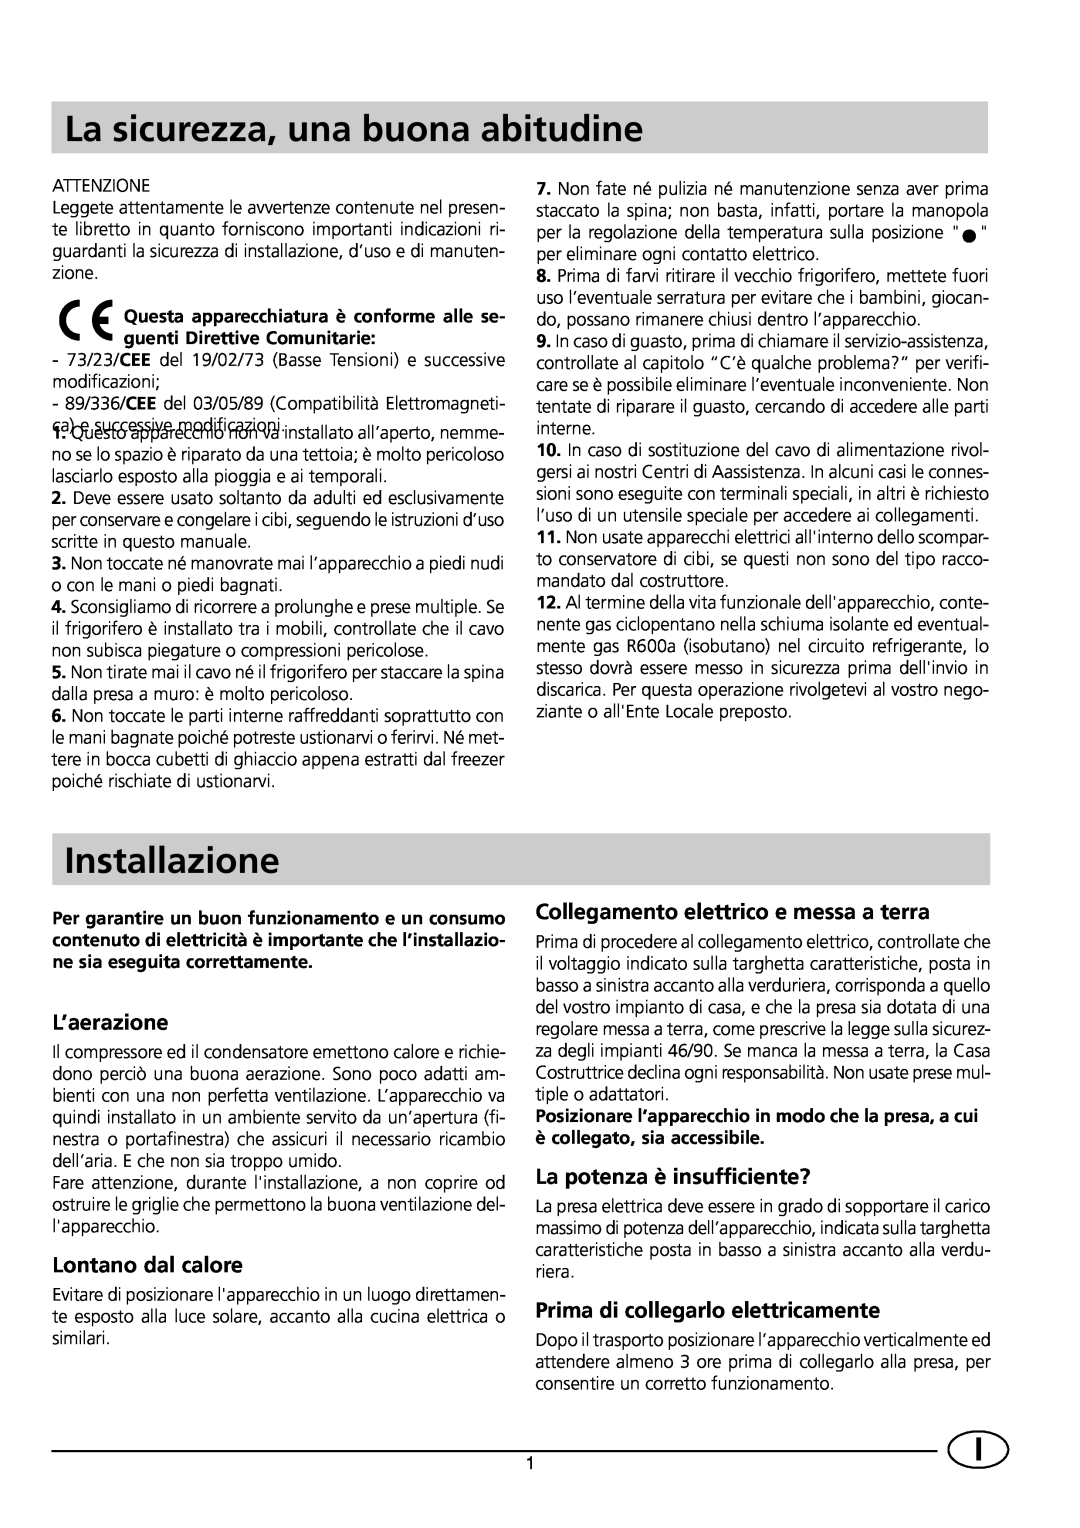 Indesit CG 3100 manual La sicurezza, una buona abitudine, Installazione, L’aerazione, Lontano dal calore 